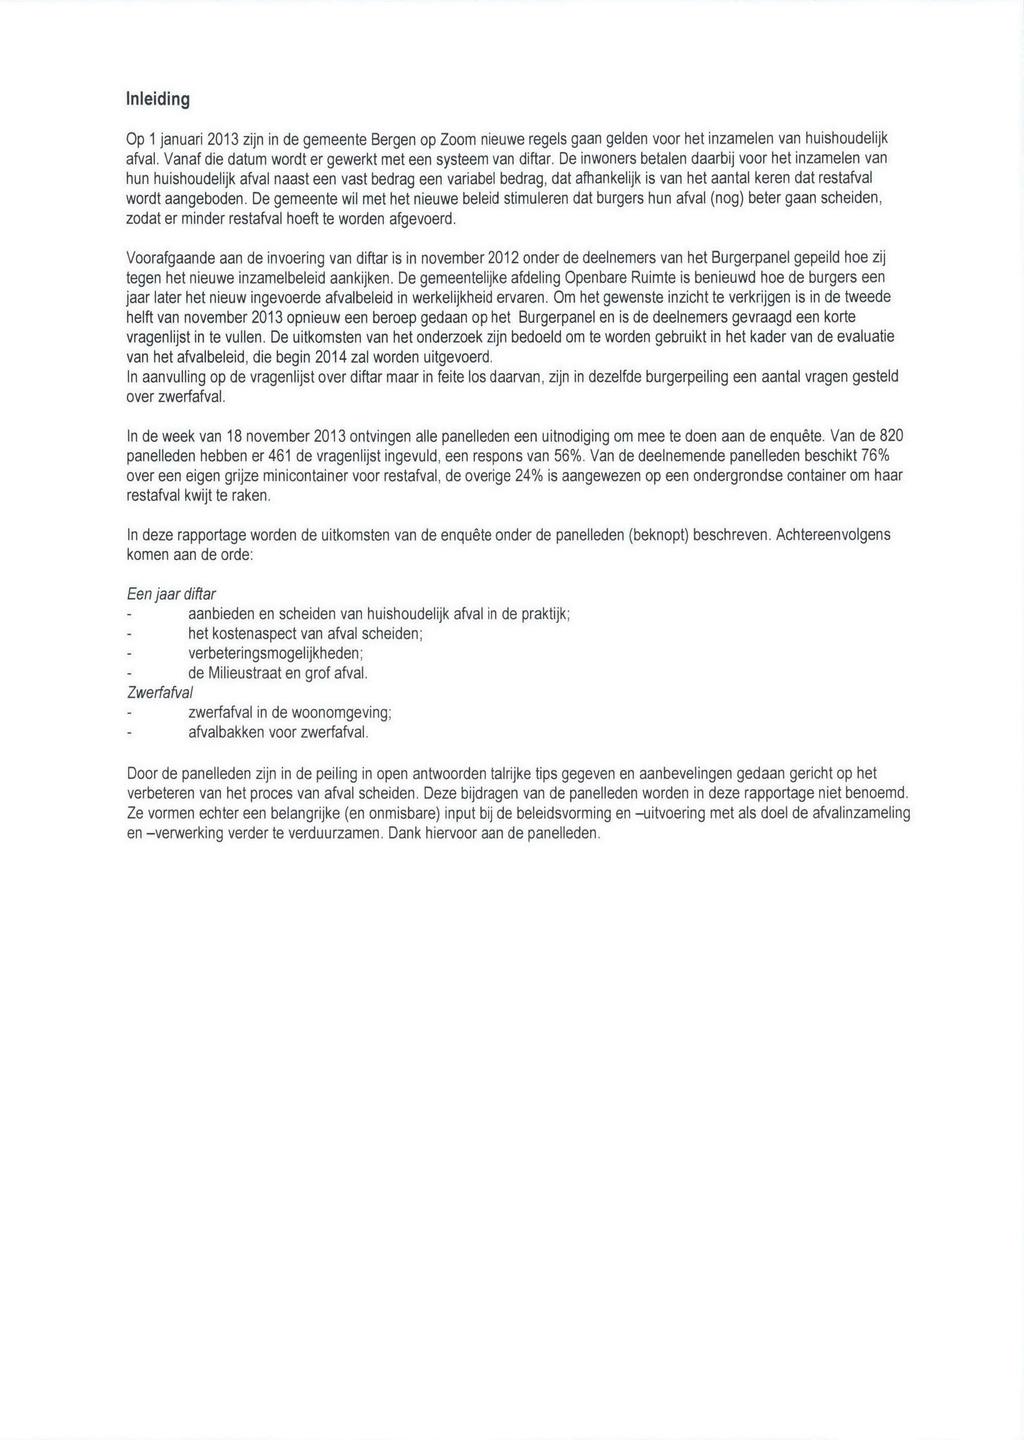 Inleiding Op 1 januari 2013 zijn in de gemeente Bergen op Zoom nieuwe regels gaan gelden voor het inzamelen van huishoudelijk afval. Vanaf die datum wordt er gewerkt met een systeem van diftar.